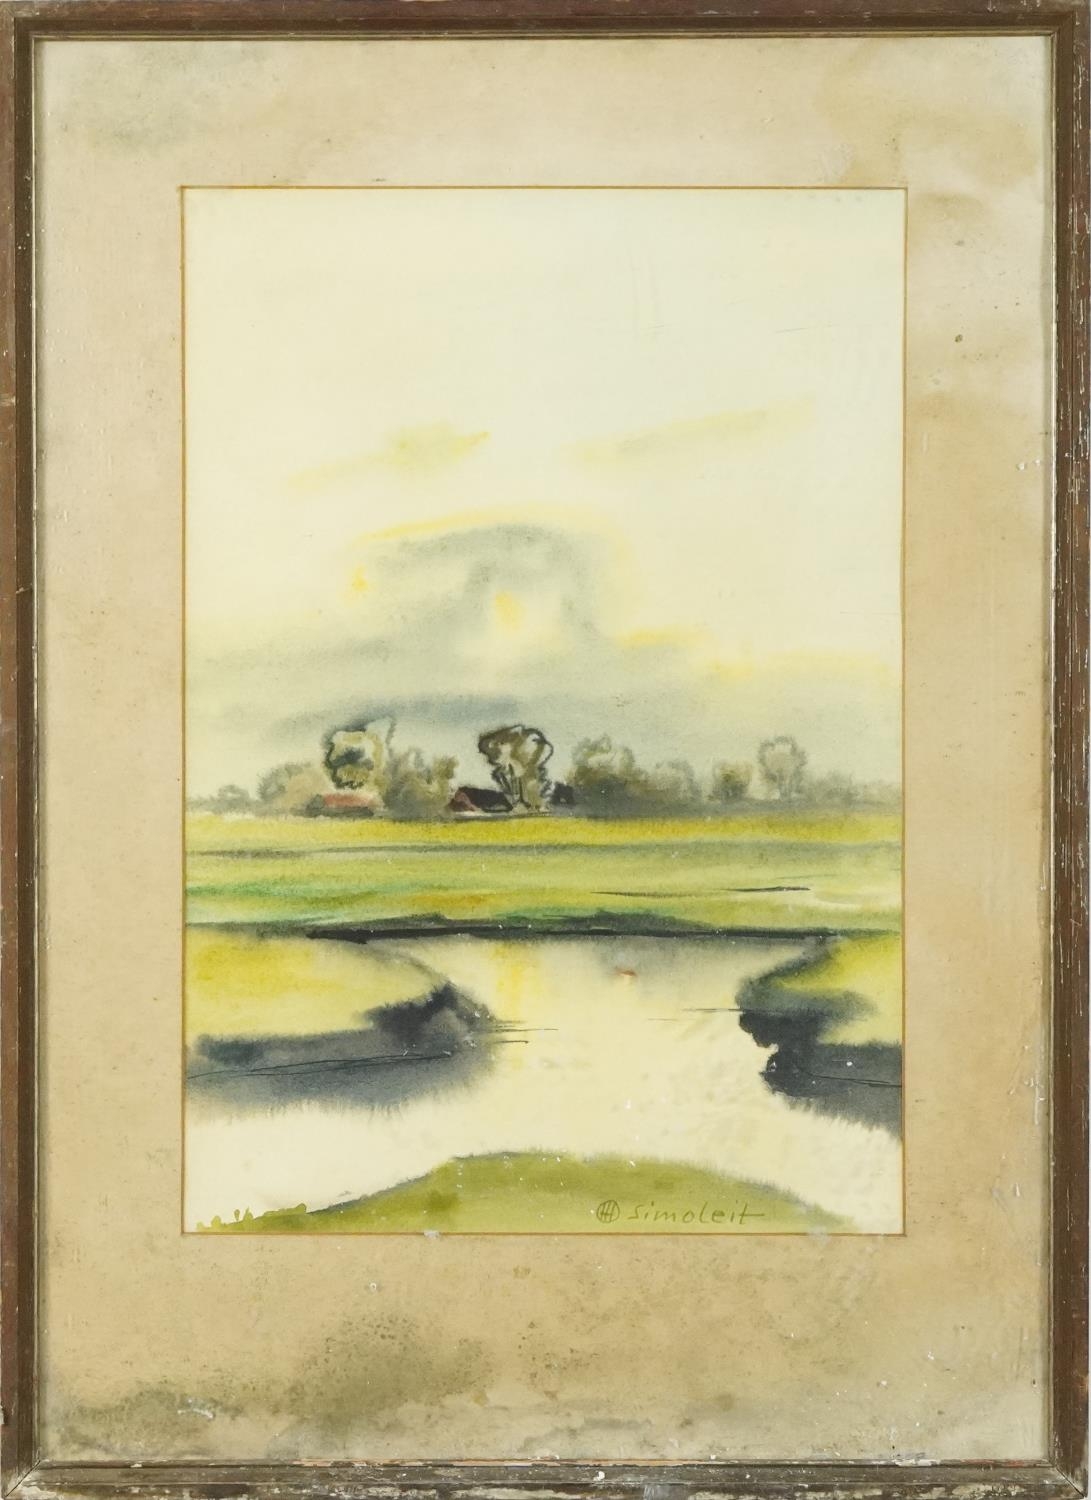 Hans Simoleit - Landscape with river, German Expressionist watercolour, Franz Leuwerbremen label - Image 2 of 5